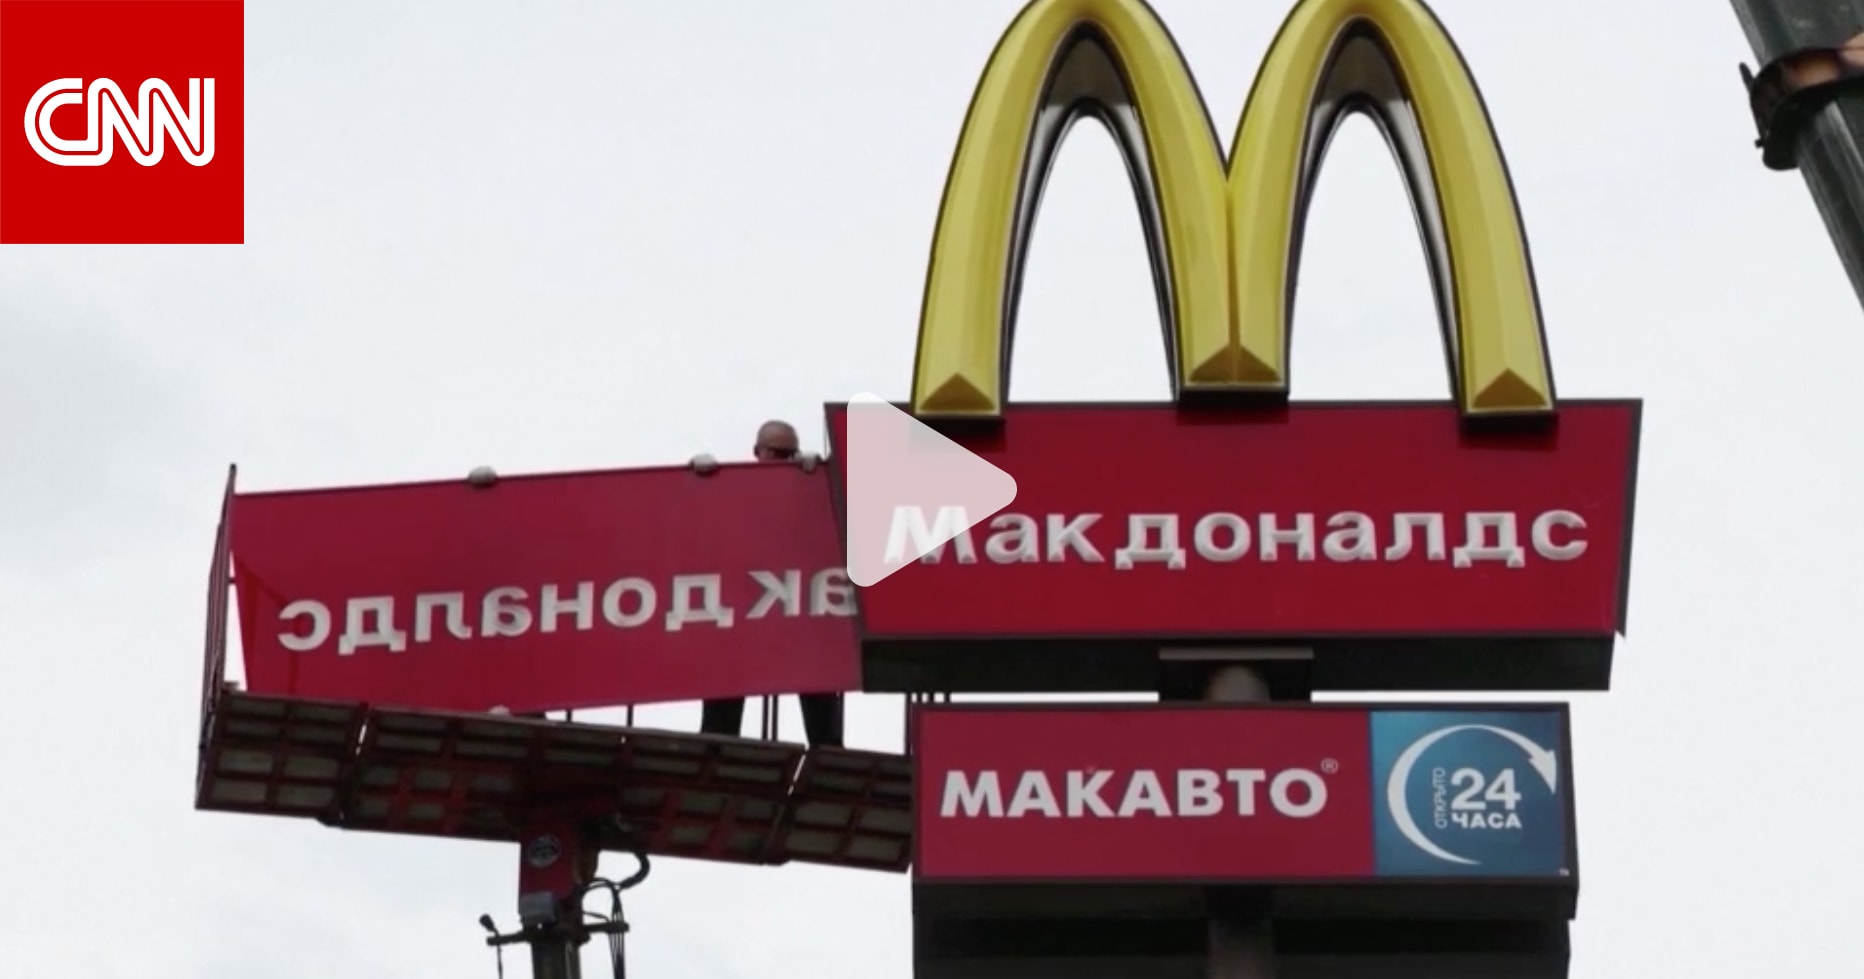 مطاعم ماكدونالدز تغادر روسيا وسلسلة جديدة تحل محلها.. كيف يبدو شعارها؟